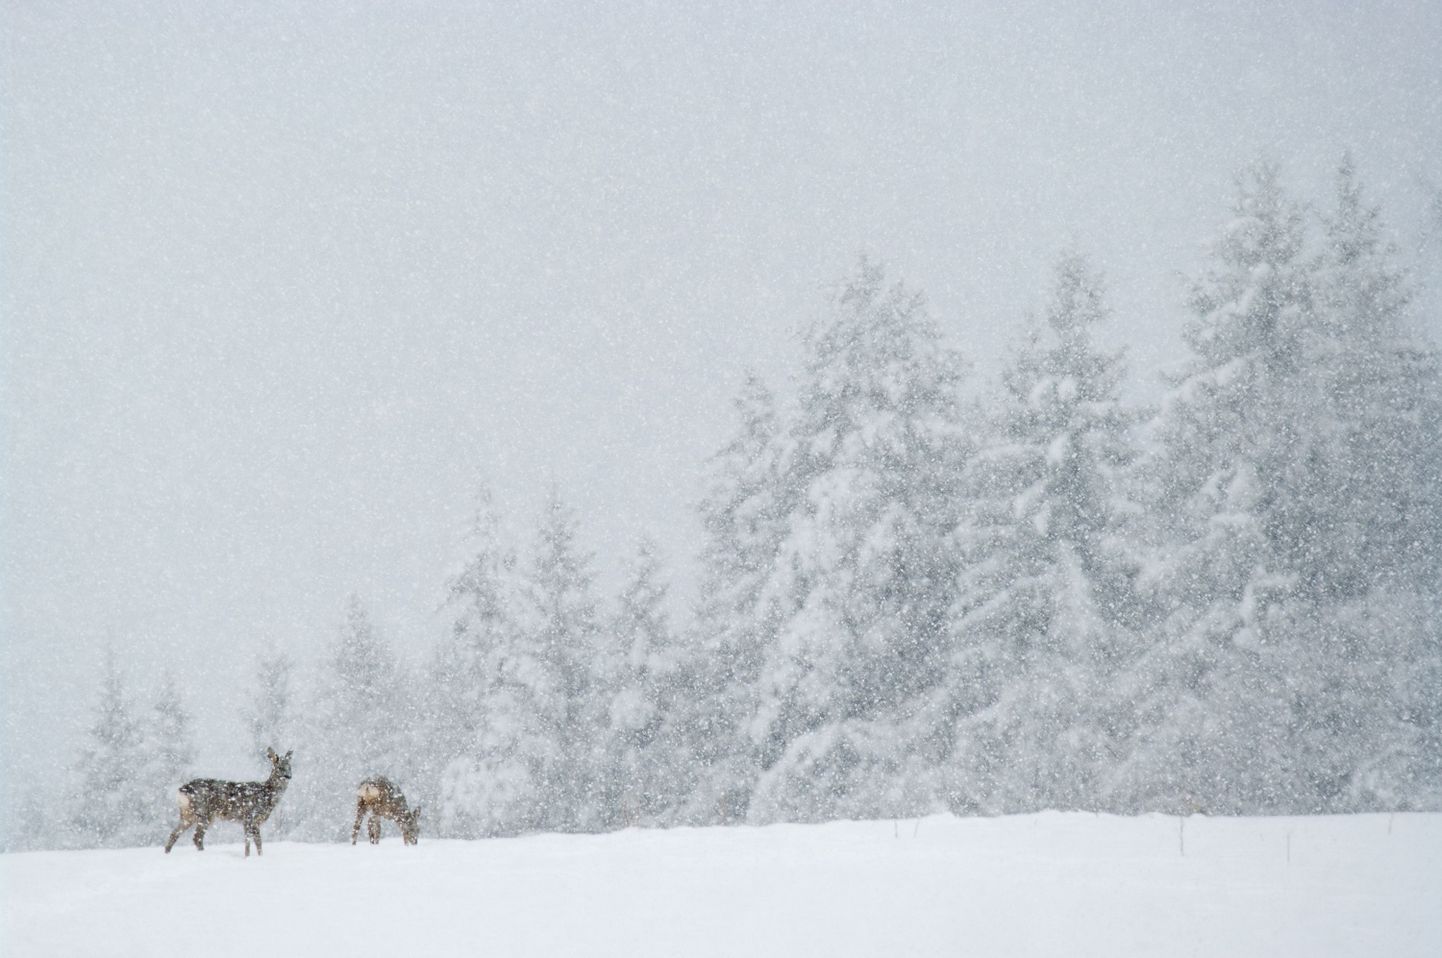 Kitsed tihedas lumesajus. Juhuslikult tabatud hetk on Kalmer Lehepuu üks lemmifotodest tänase päevani.